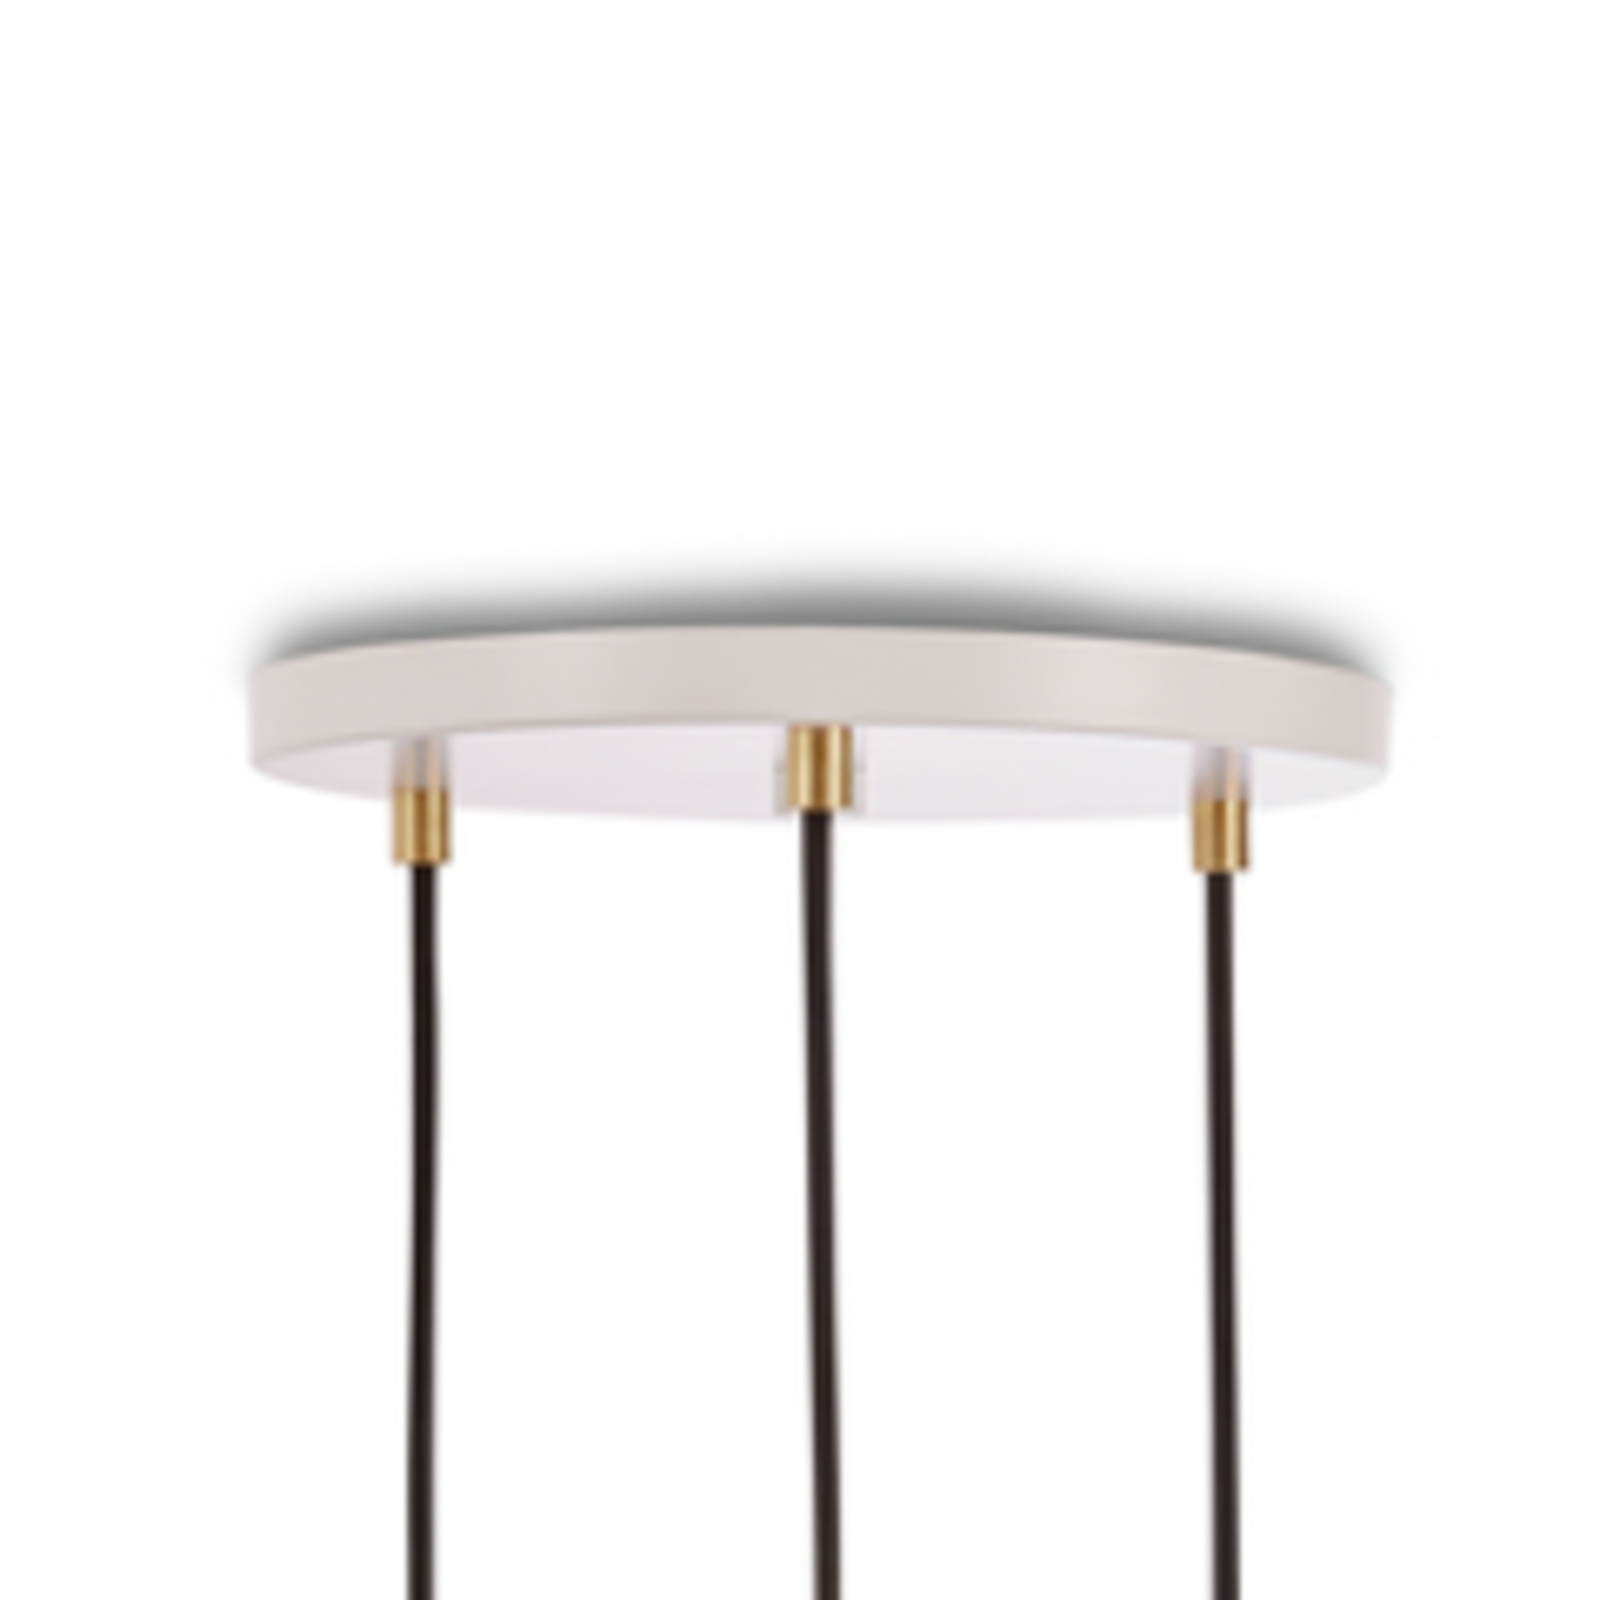 Lampa wisząca Tala Triple Pendant okrągła, E27 opal, biały/dębowy